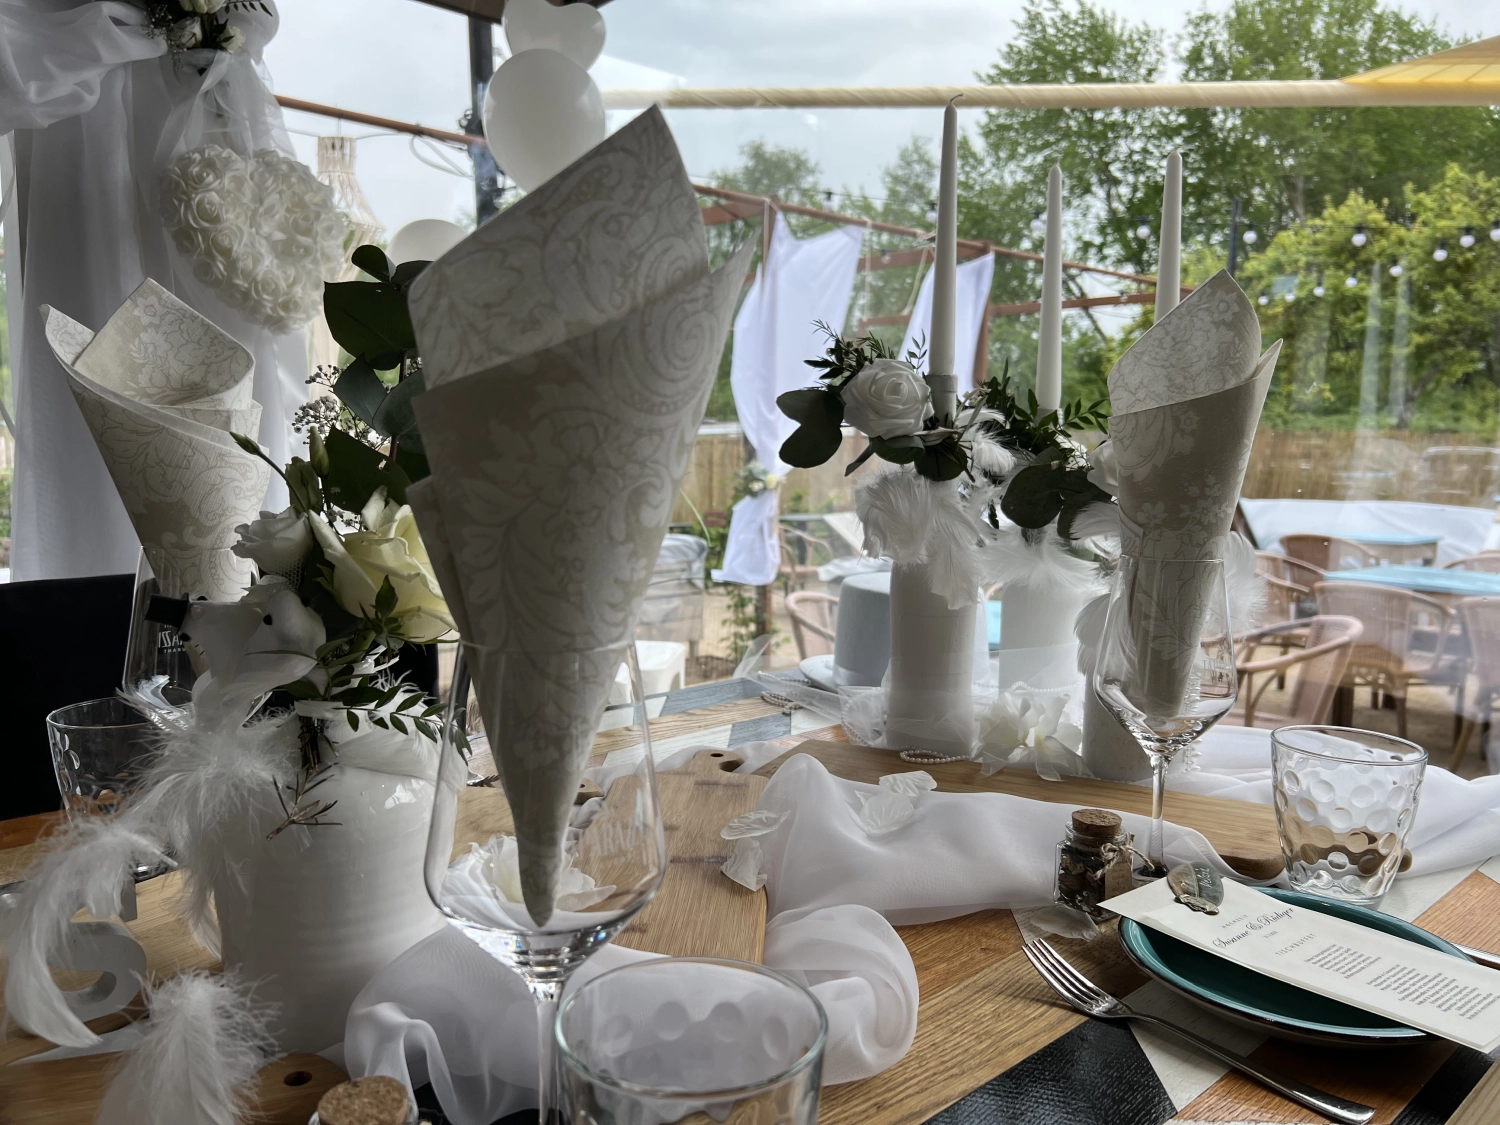 Taparazzi-Restaurant, gedeckter Tisch, auf den Tellern platzierte Menükarten, weiße Serviette im Glas und weiße Rosenblüten